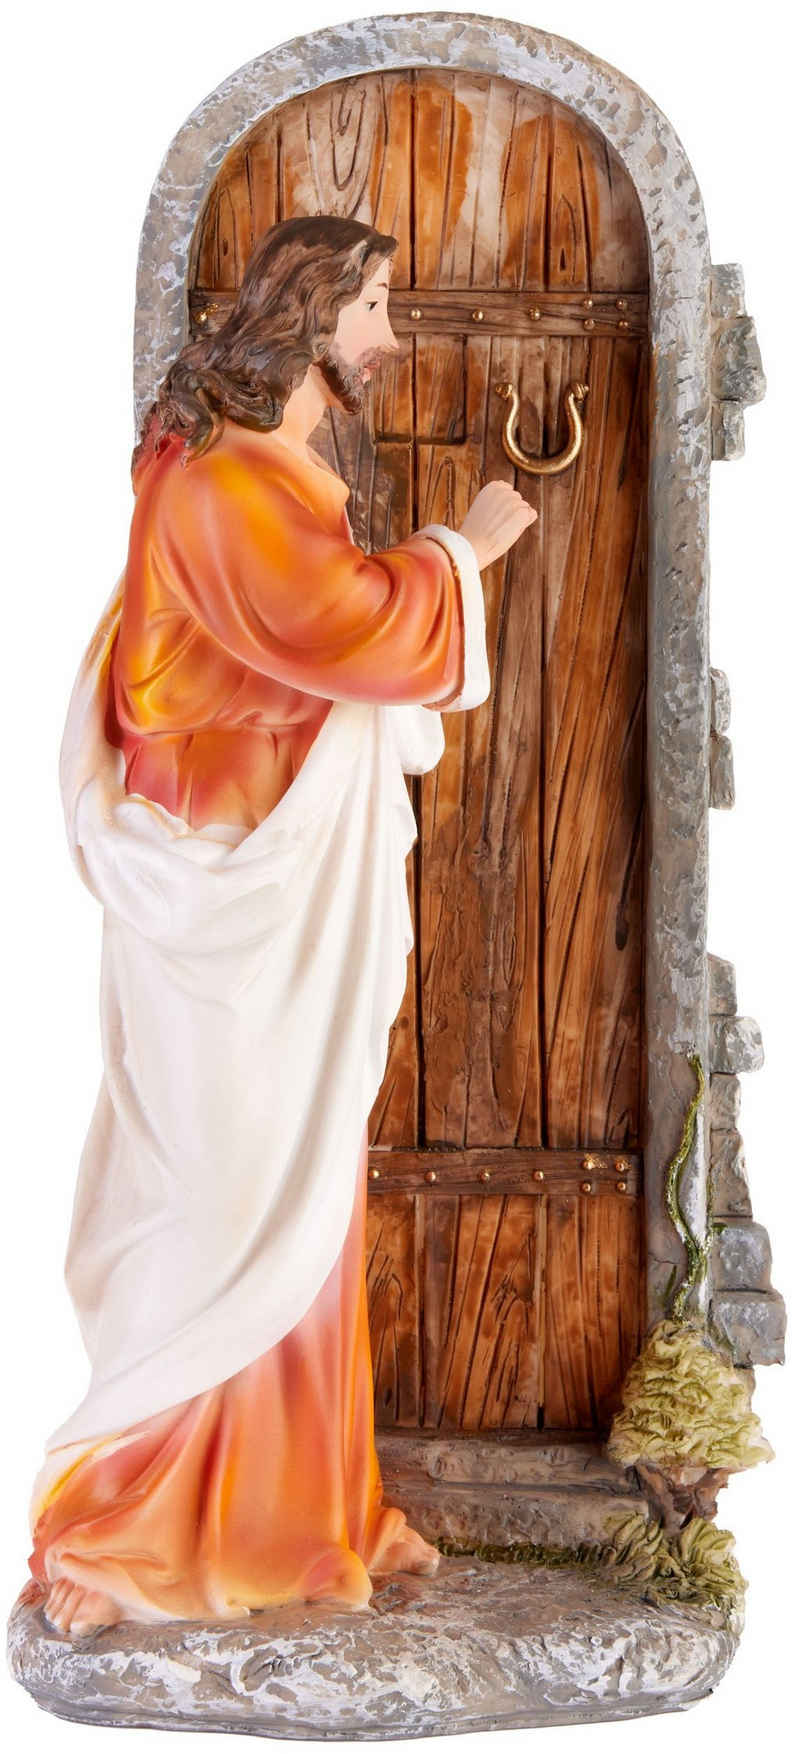 BRUBAKER Weihnachtsfigur Jesus Christus klopft an der Tür - 30 cm Weihnachtsdekoration (mit handbemalter Figur aus Polyresin, 1 St), Abendmahlszene Weihnachtsfigur - Tischdekoration